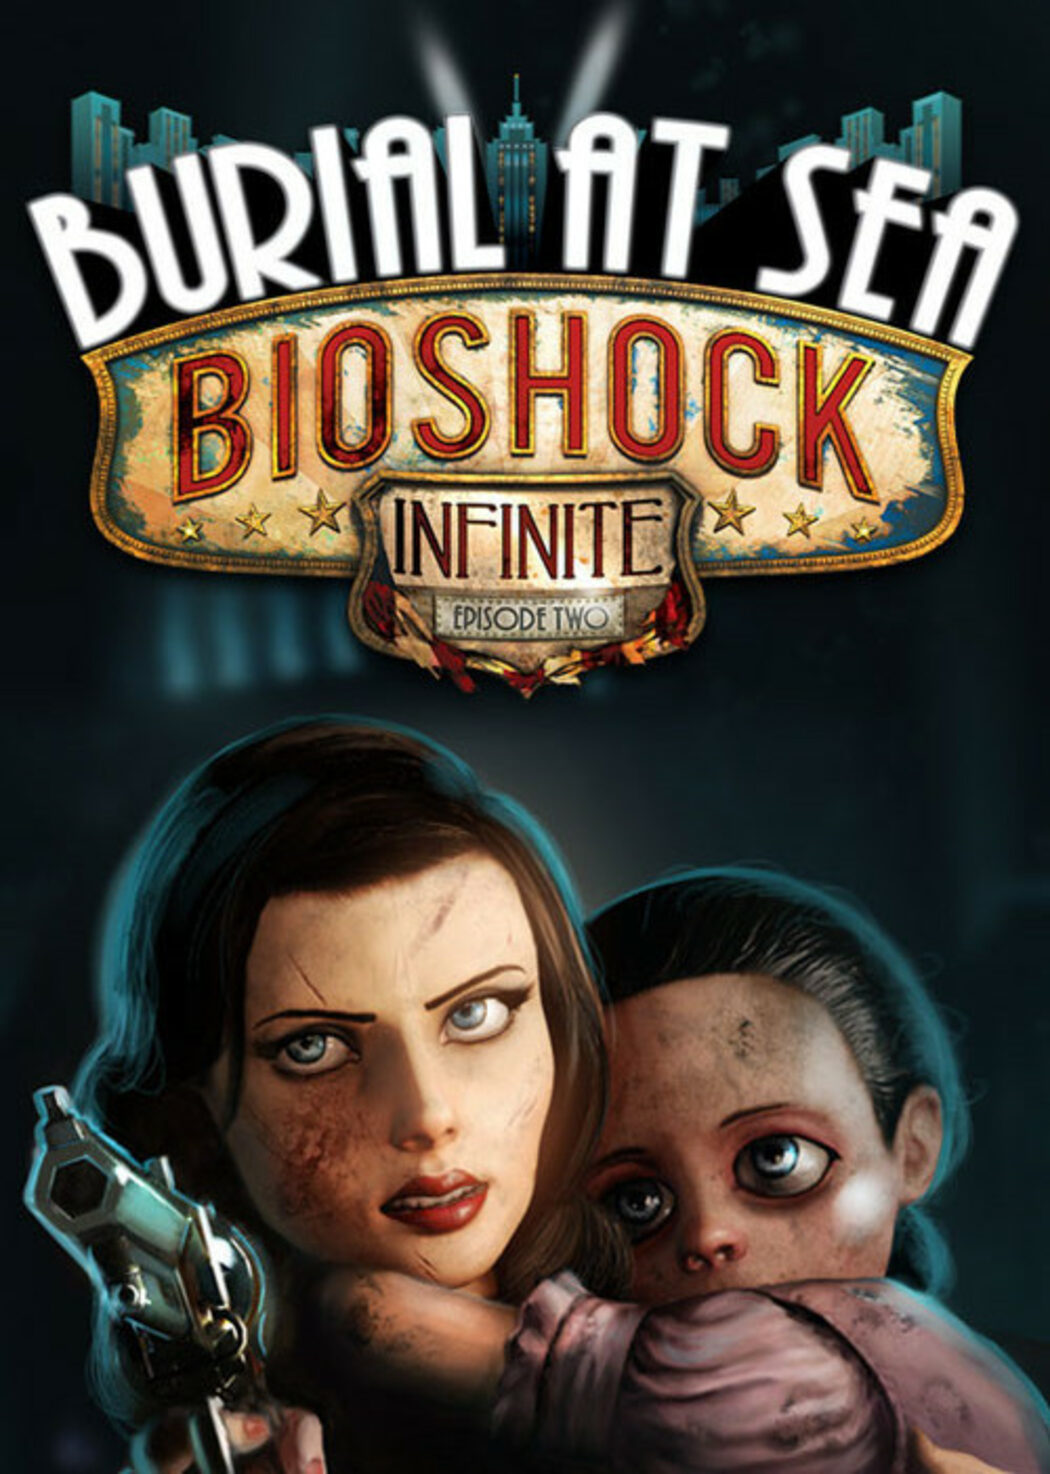 BioShock Infinite: Burial at Sea Episode 2 DLC